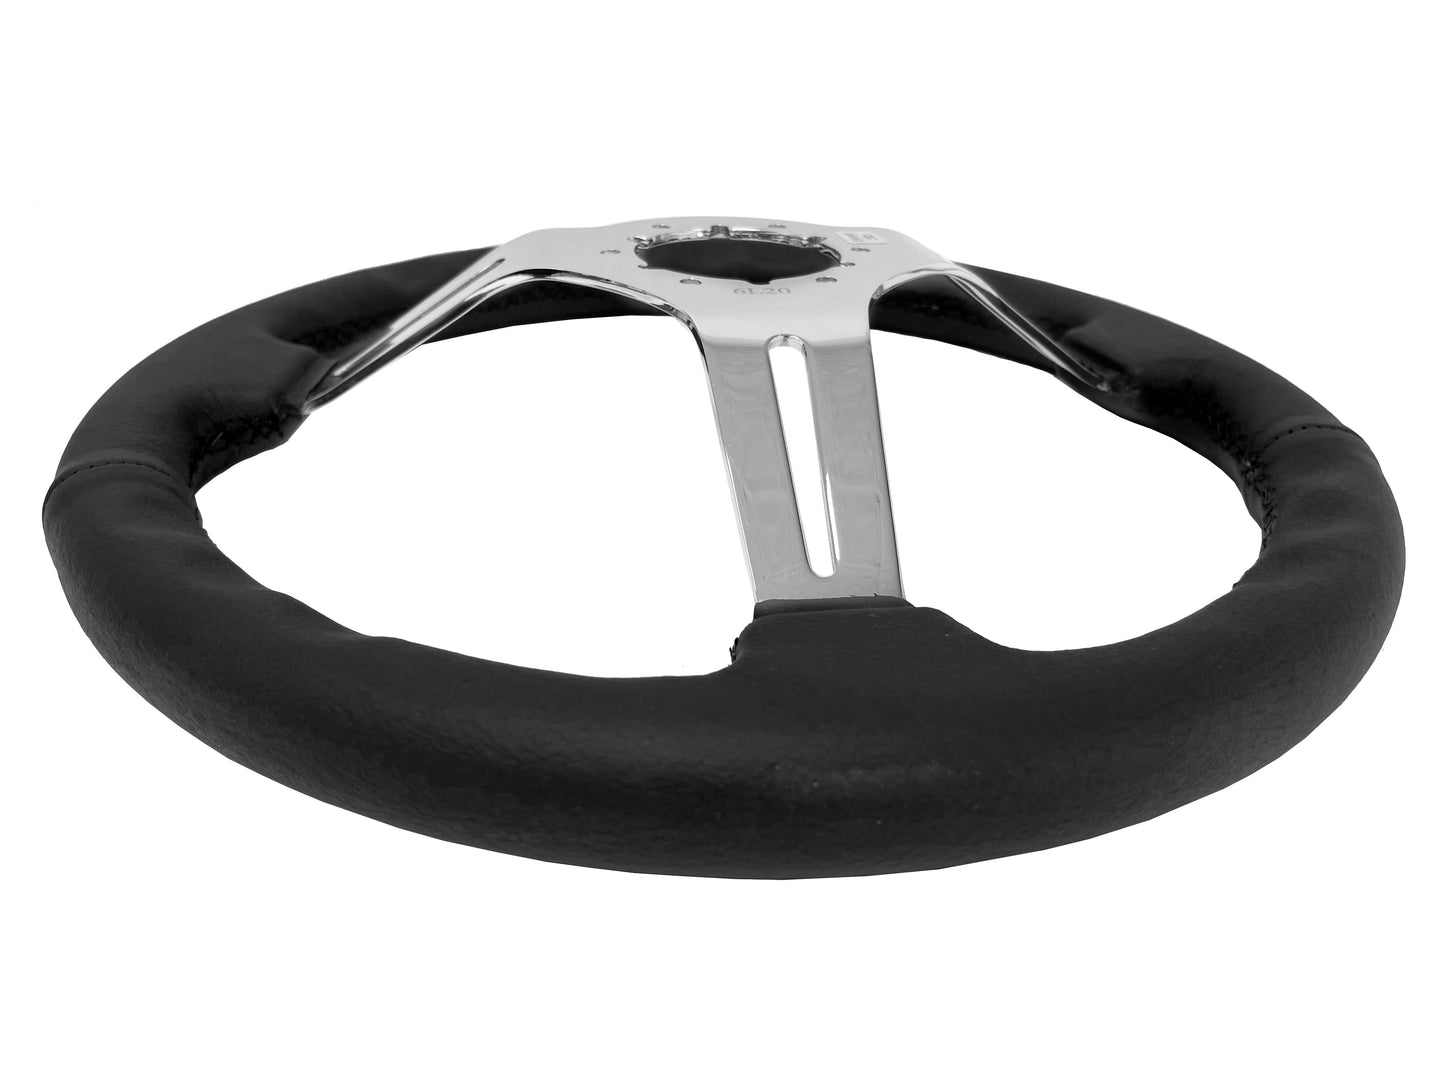 Mazda MX-6 Steering Wheel Kit | Black Leather | ST3012BLK